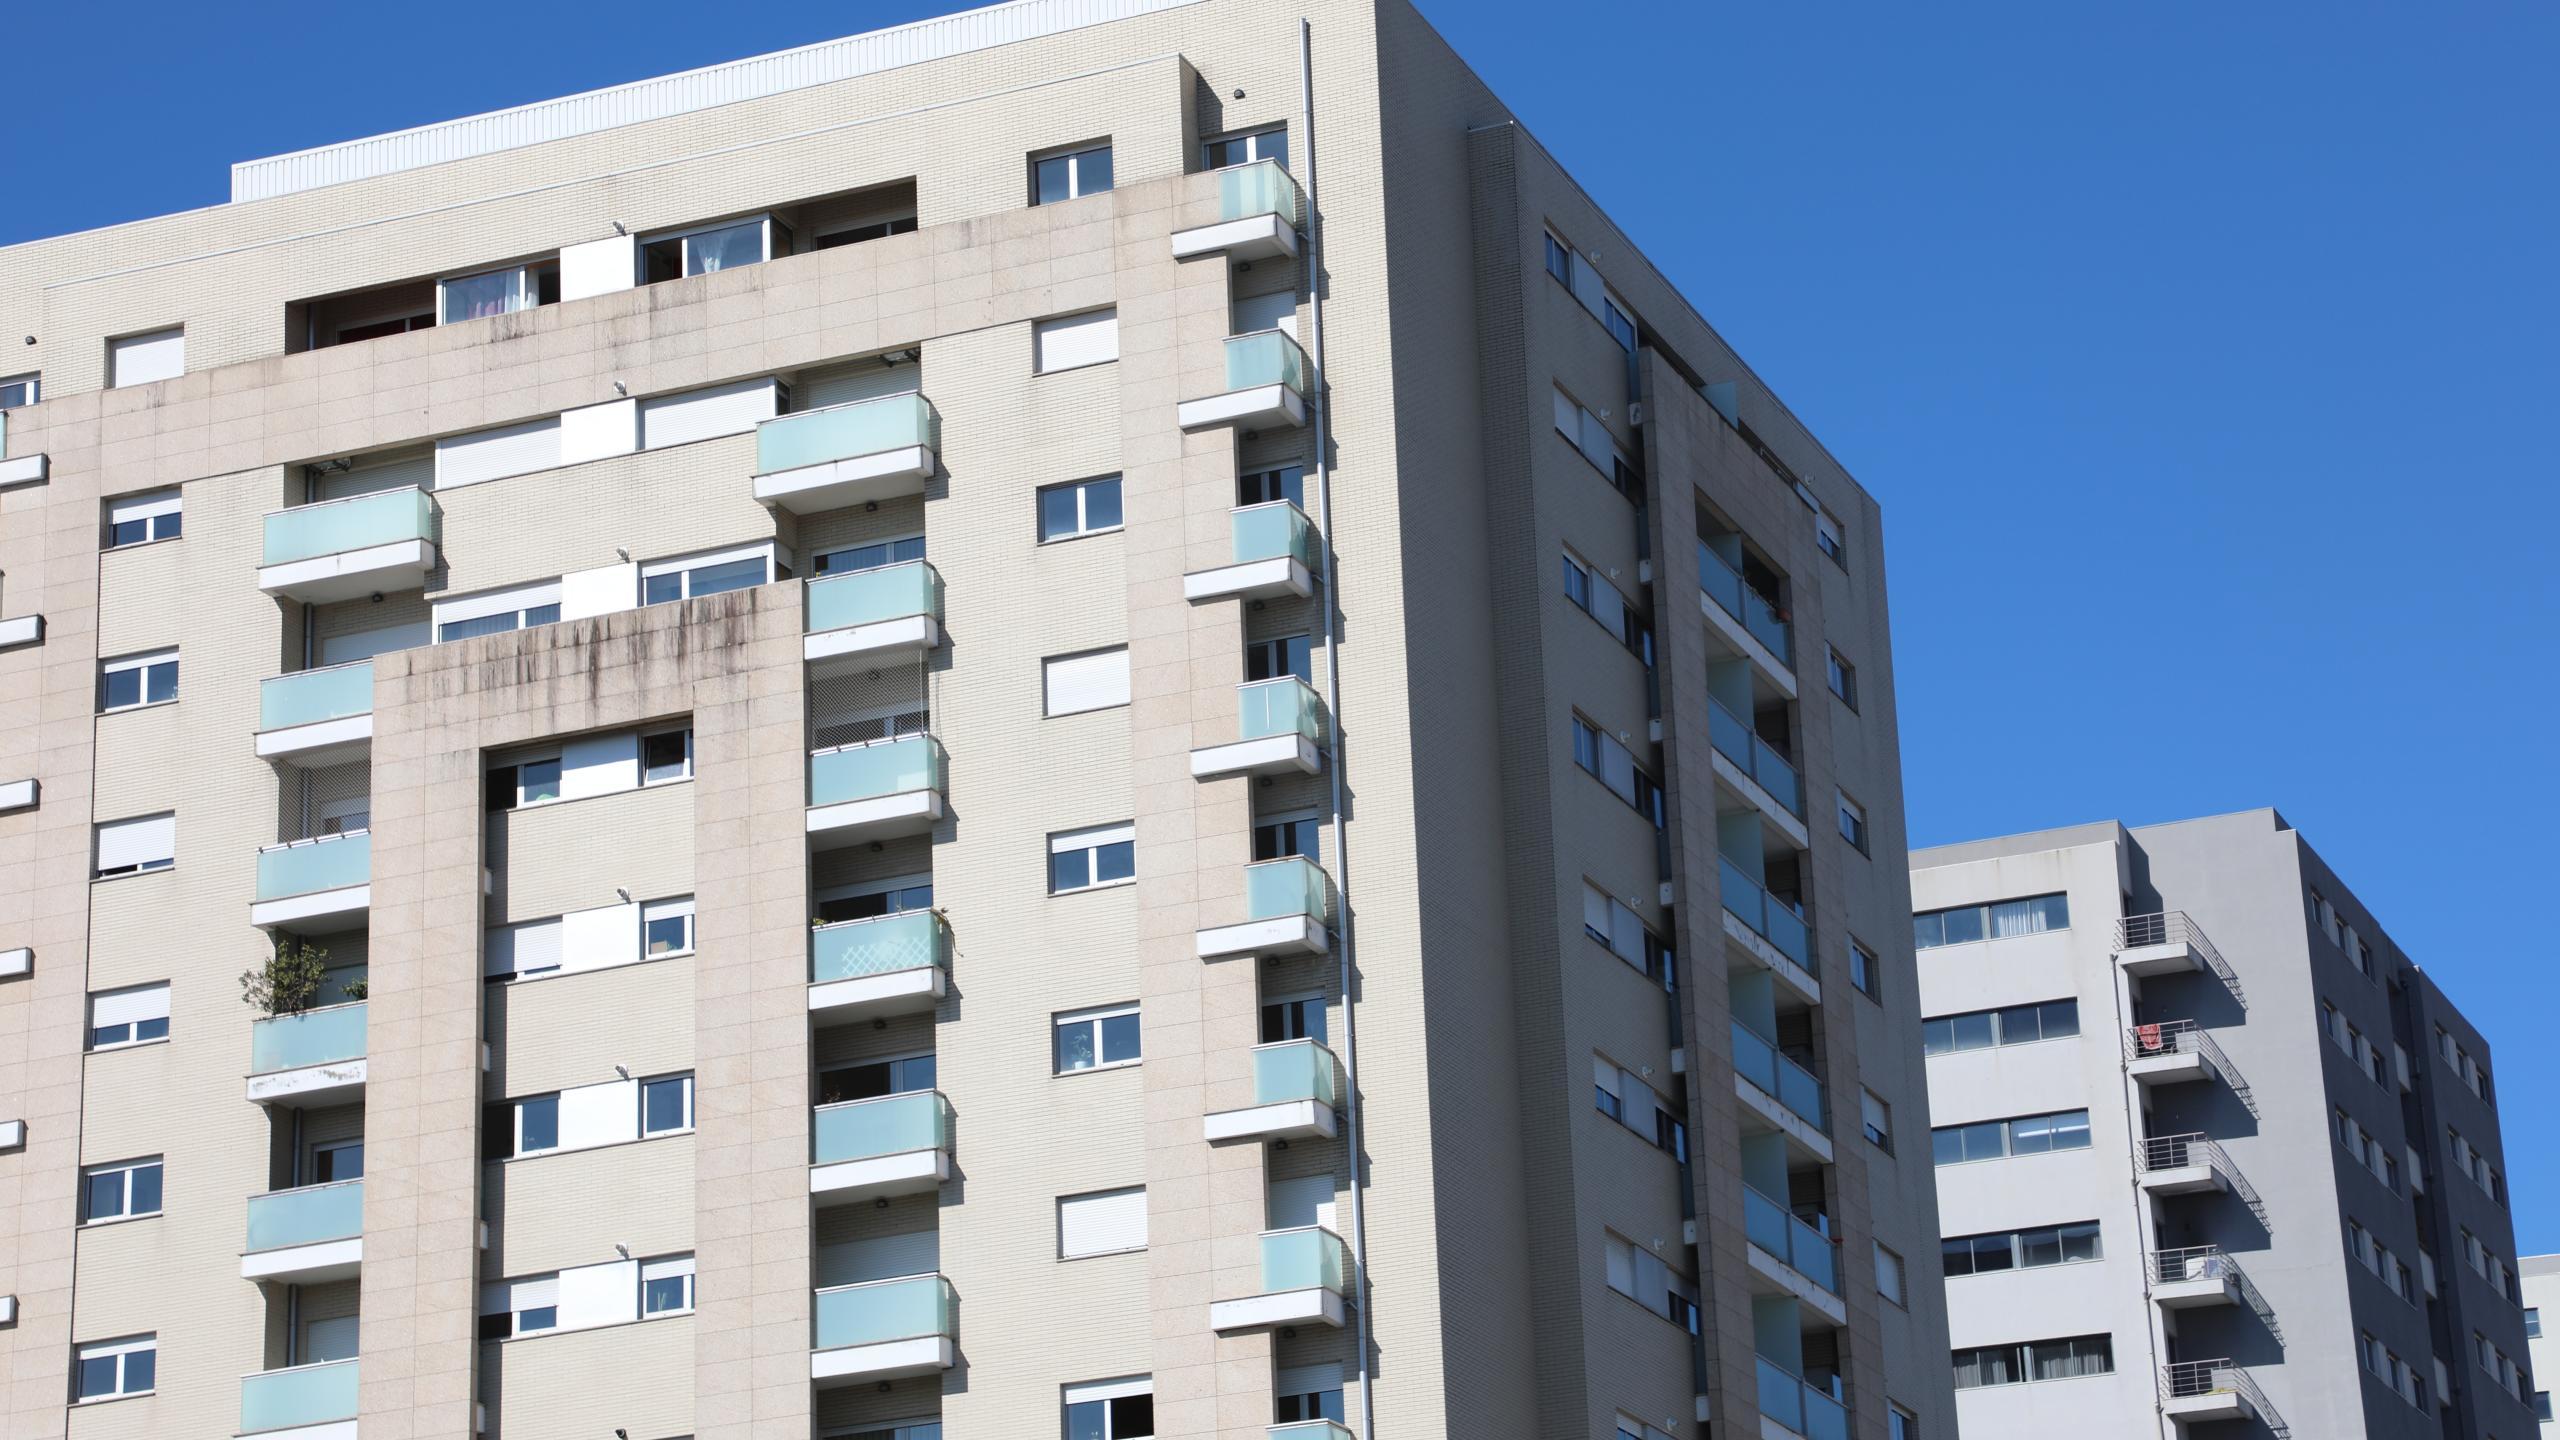 Preços da habitação aumentam 7,6% no 1.º trimestre para 1.565 euros/m2